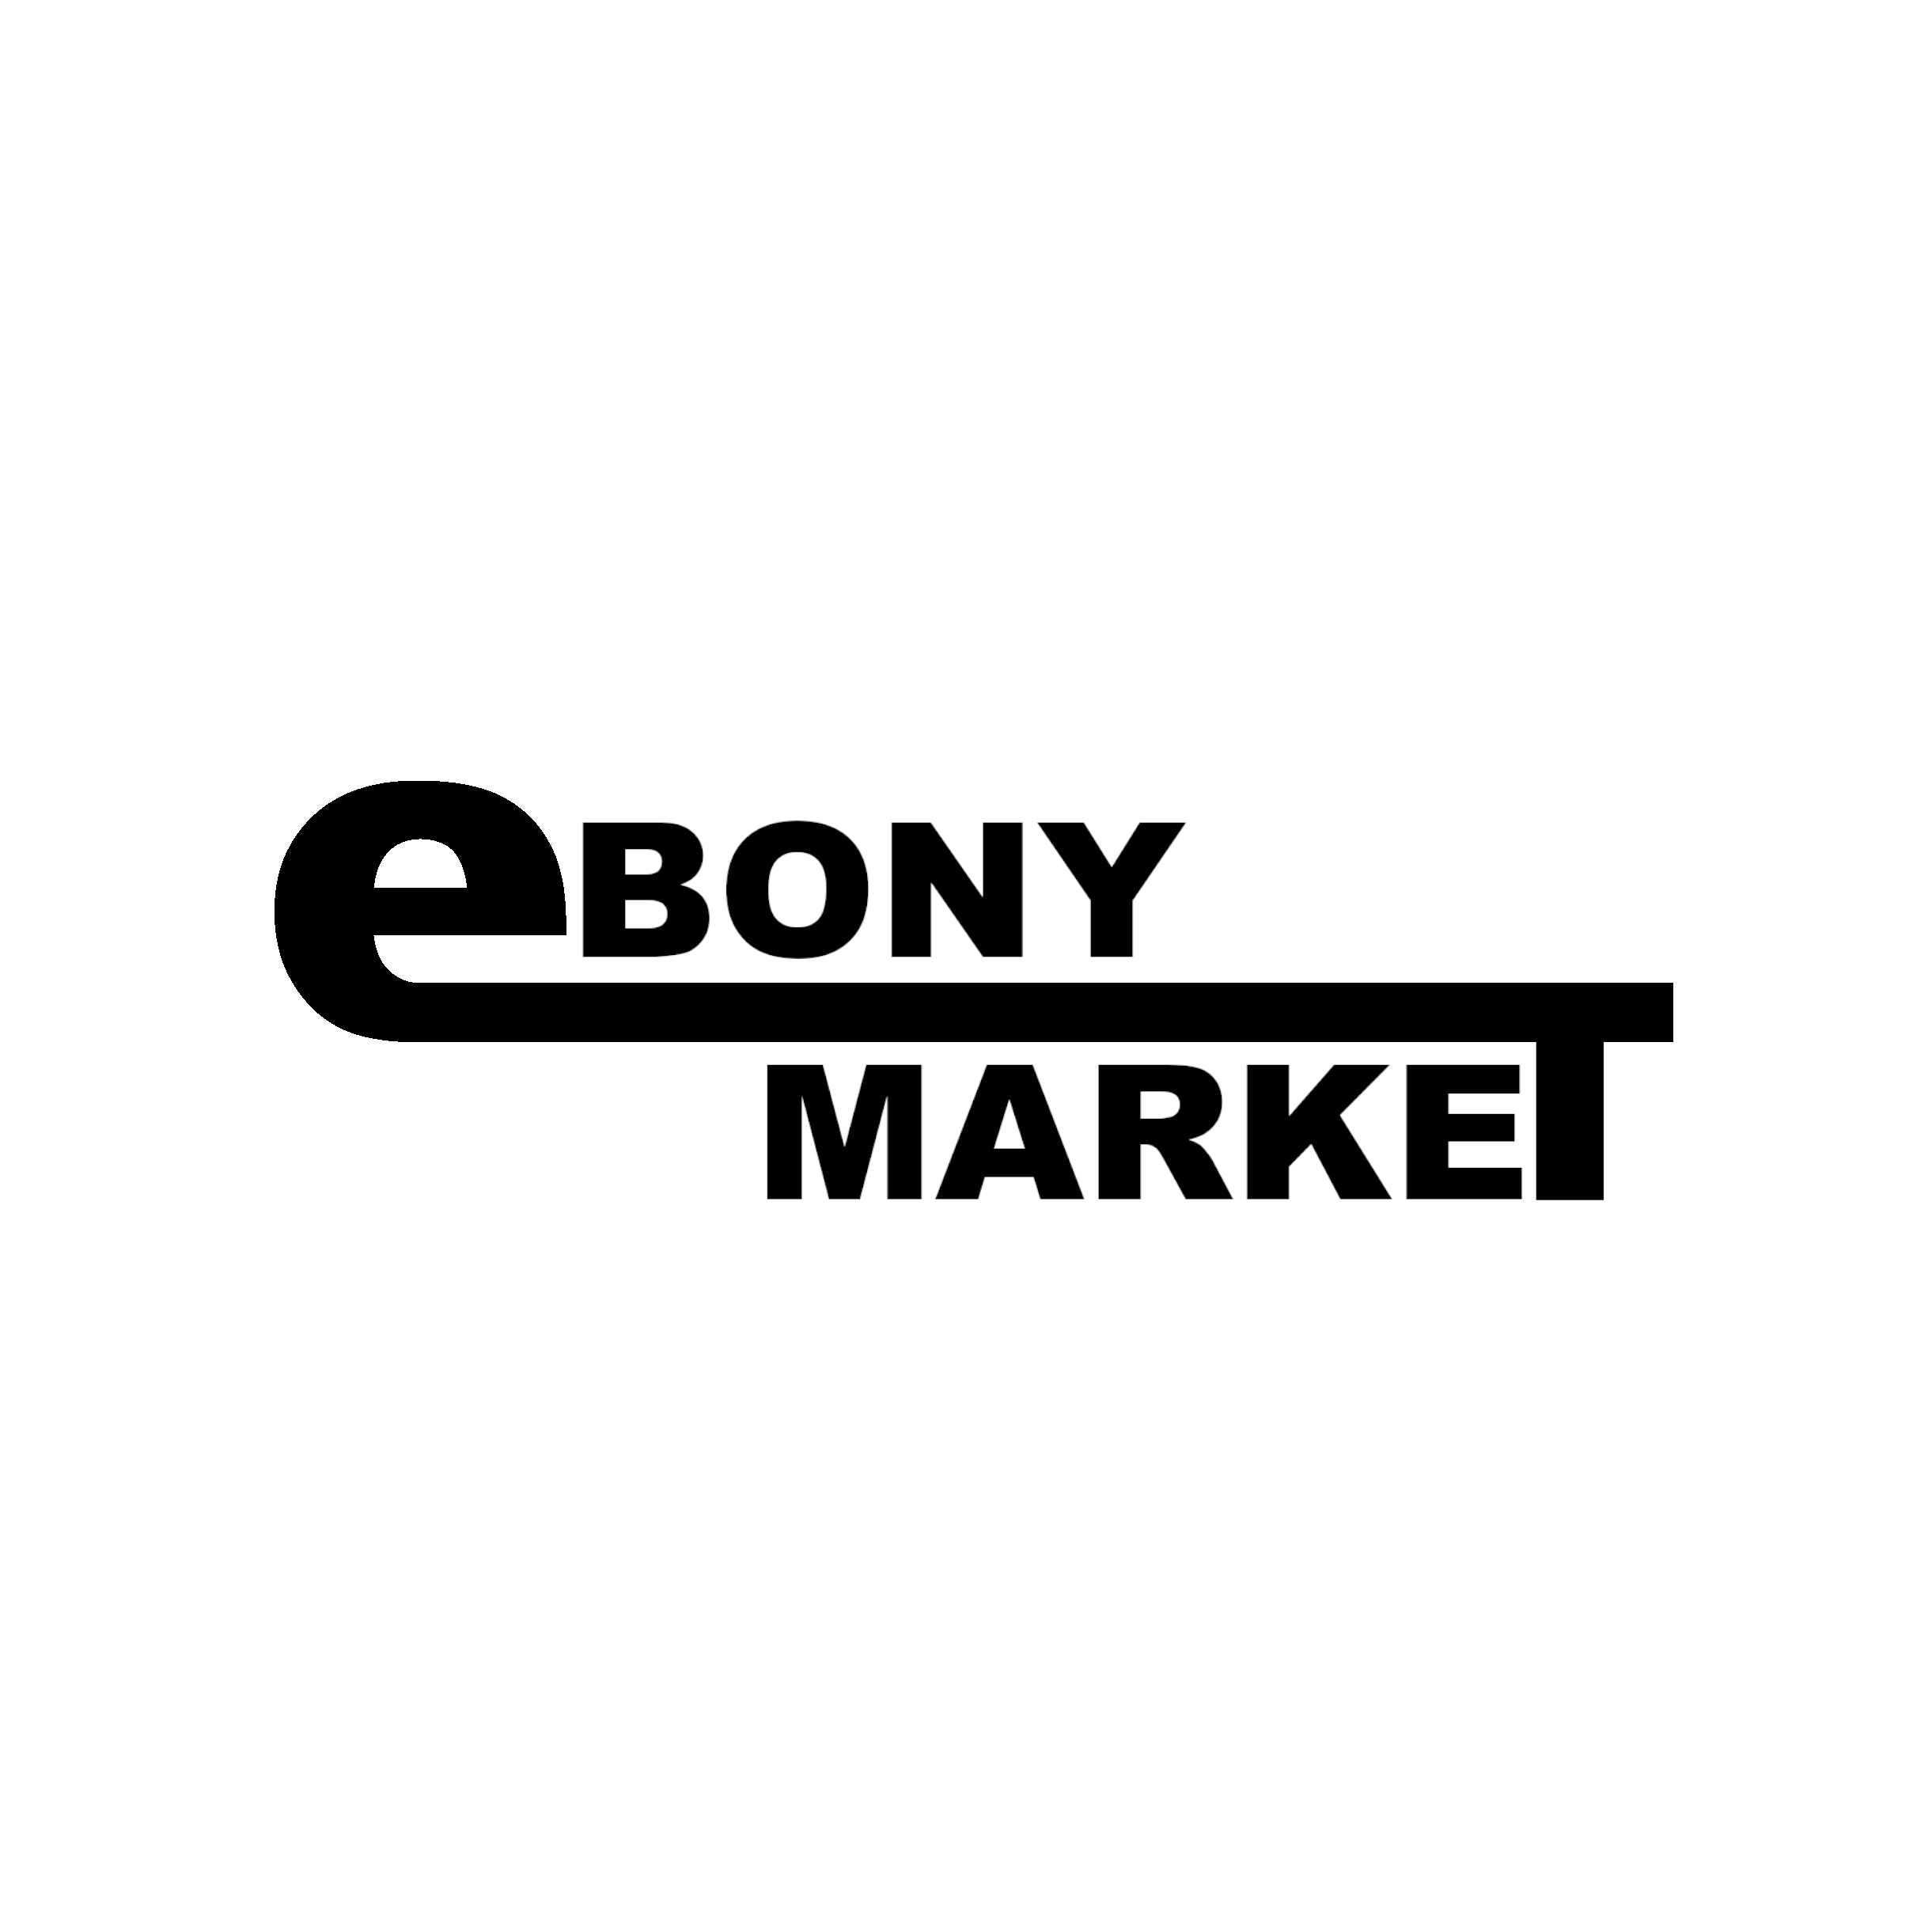 ebonymarket_logo_black_whitebg.png